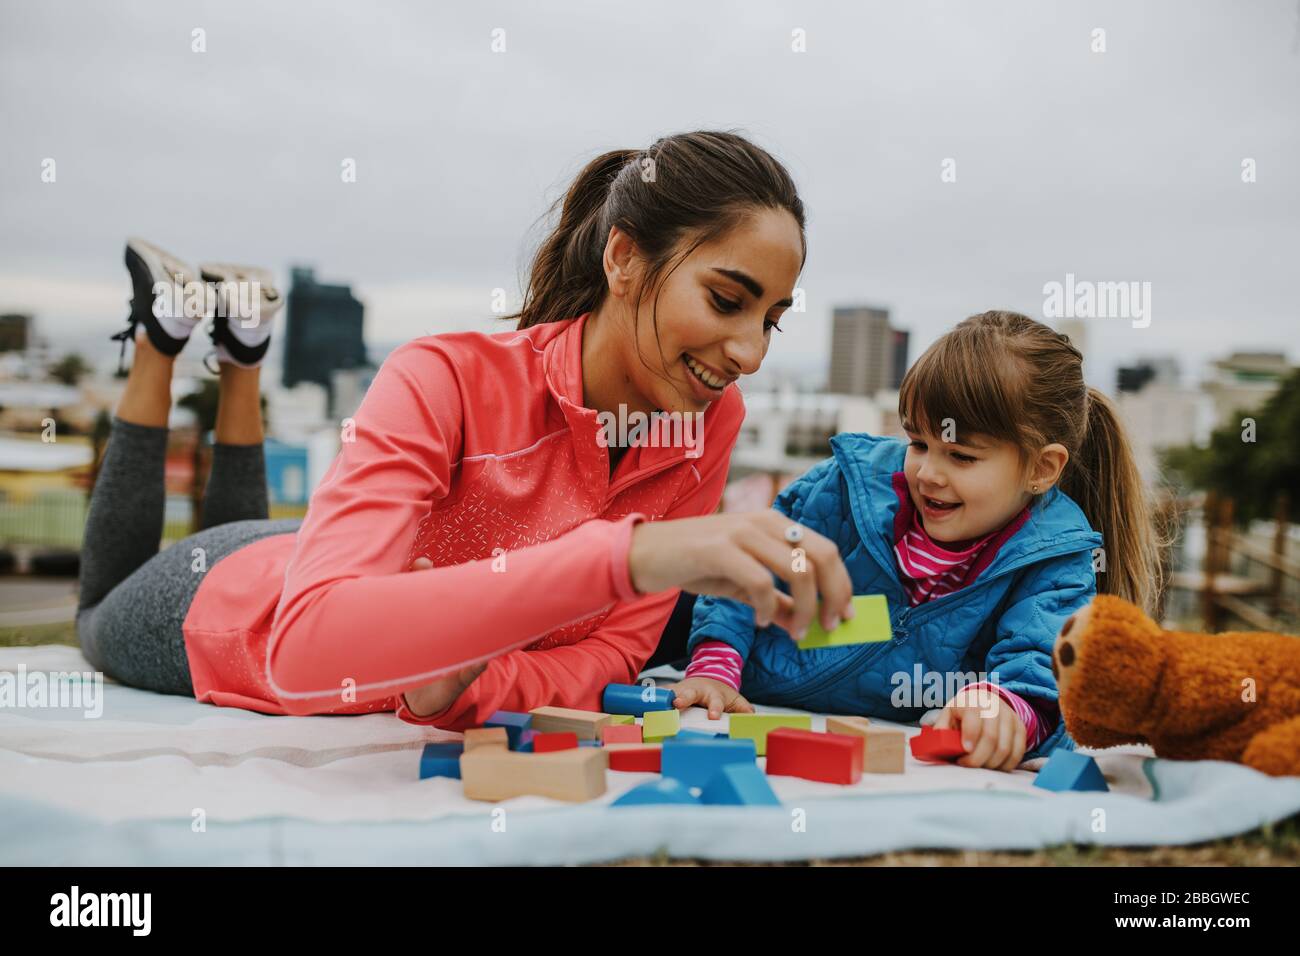 Frau, die mit einem kleinen Mädchen im Park Bausteine spielt. Mädchen und ihr Kindermädchen liegen auf der Decke und spielen Holzklötze am Park. Stockfoto